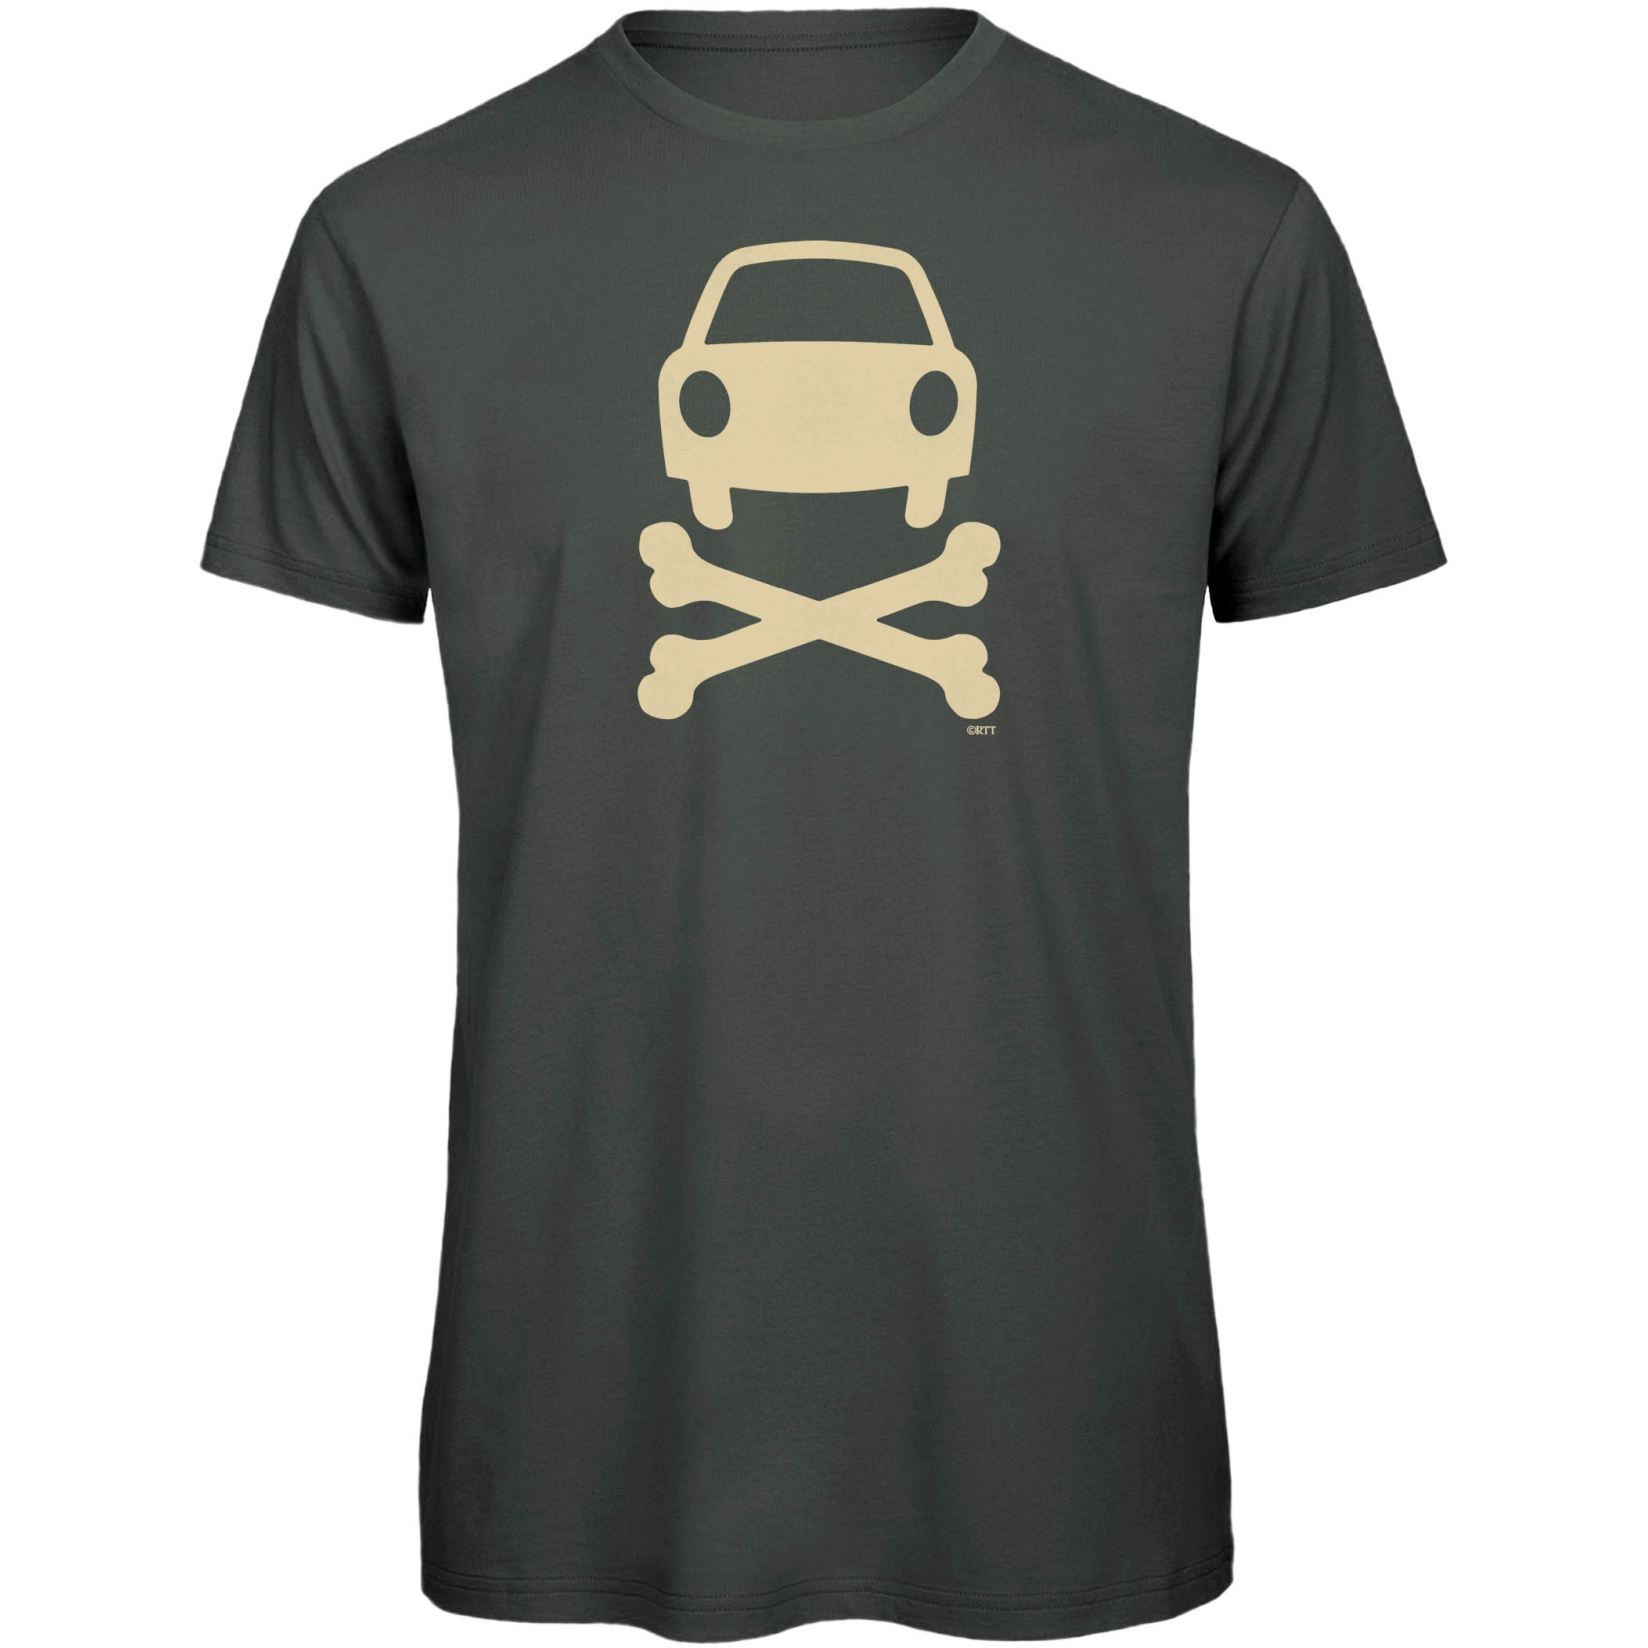 Produktbild von RTTshirts Fahrrad T-Shirt No Car - dunkelgrau